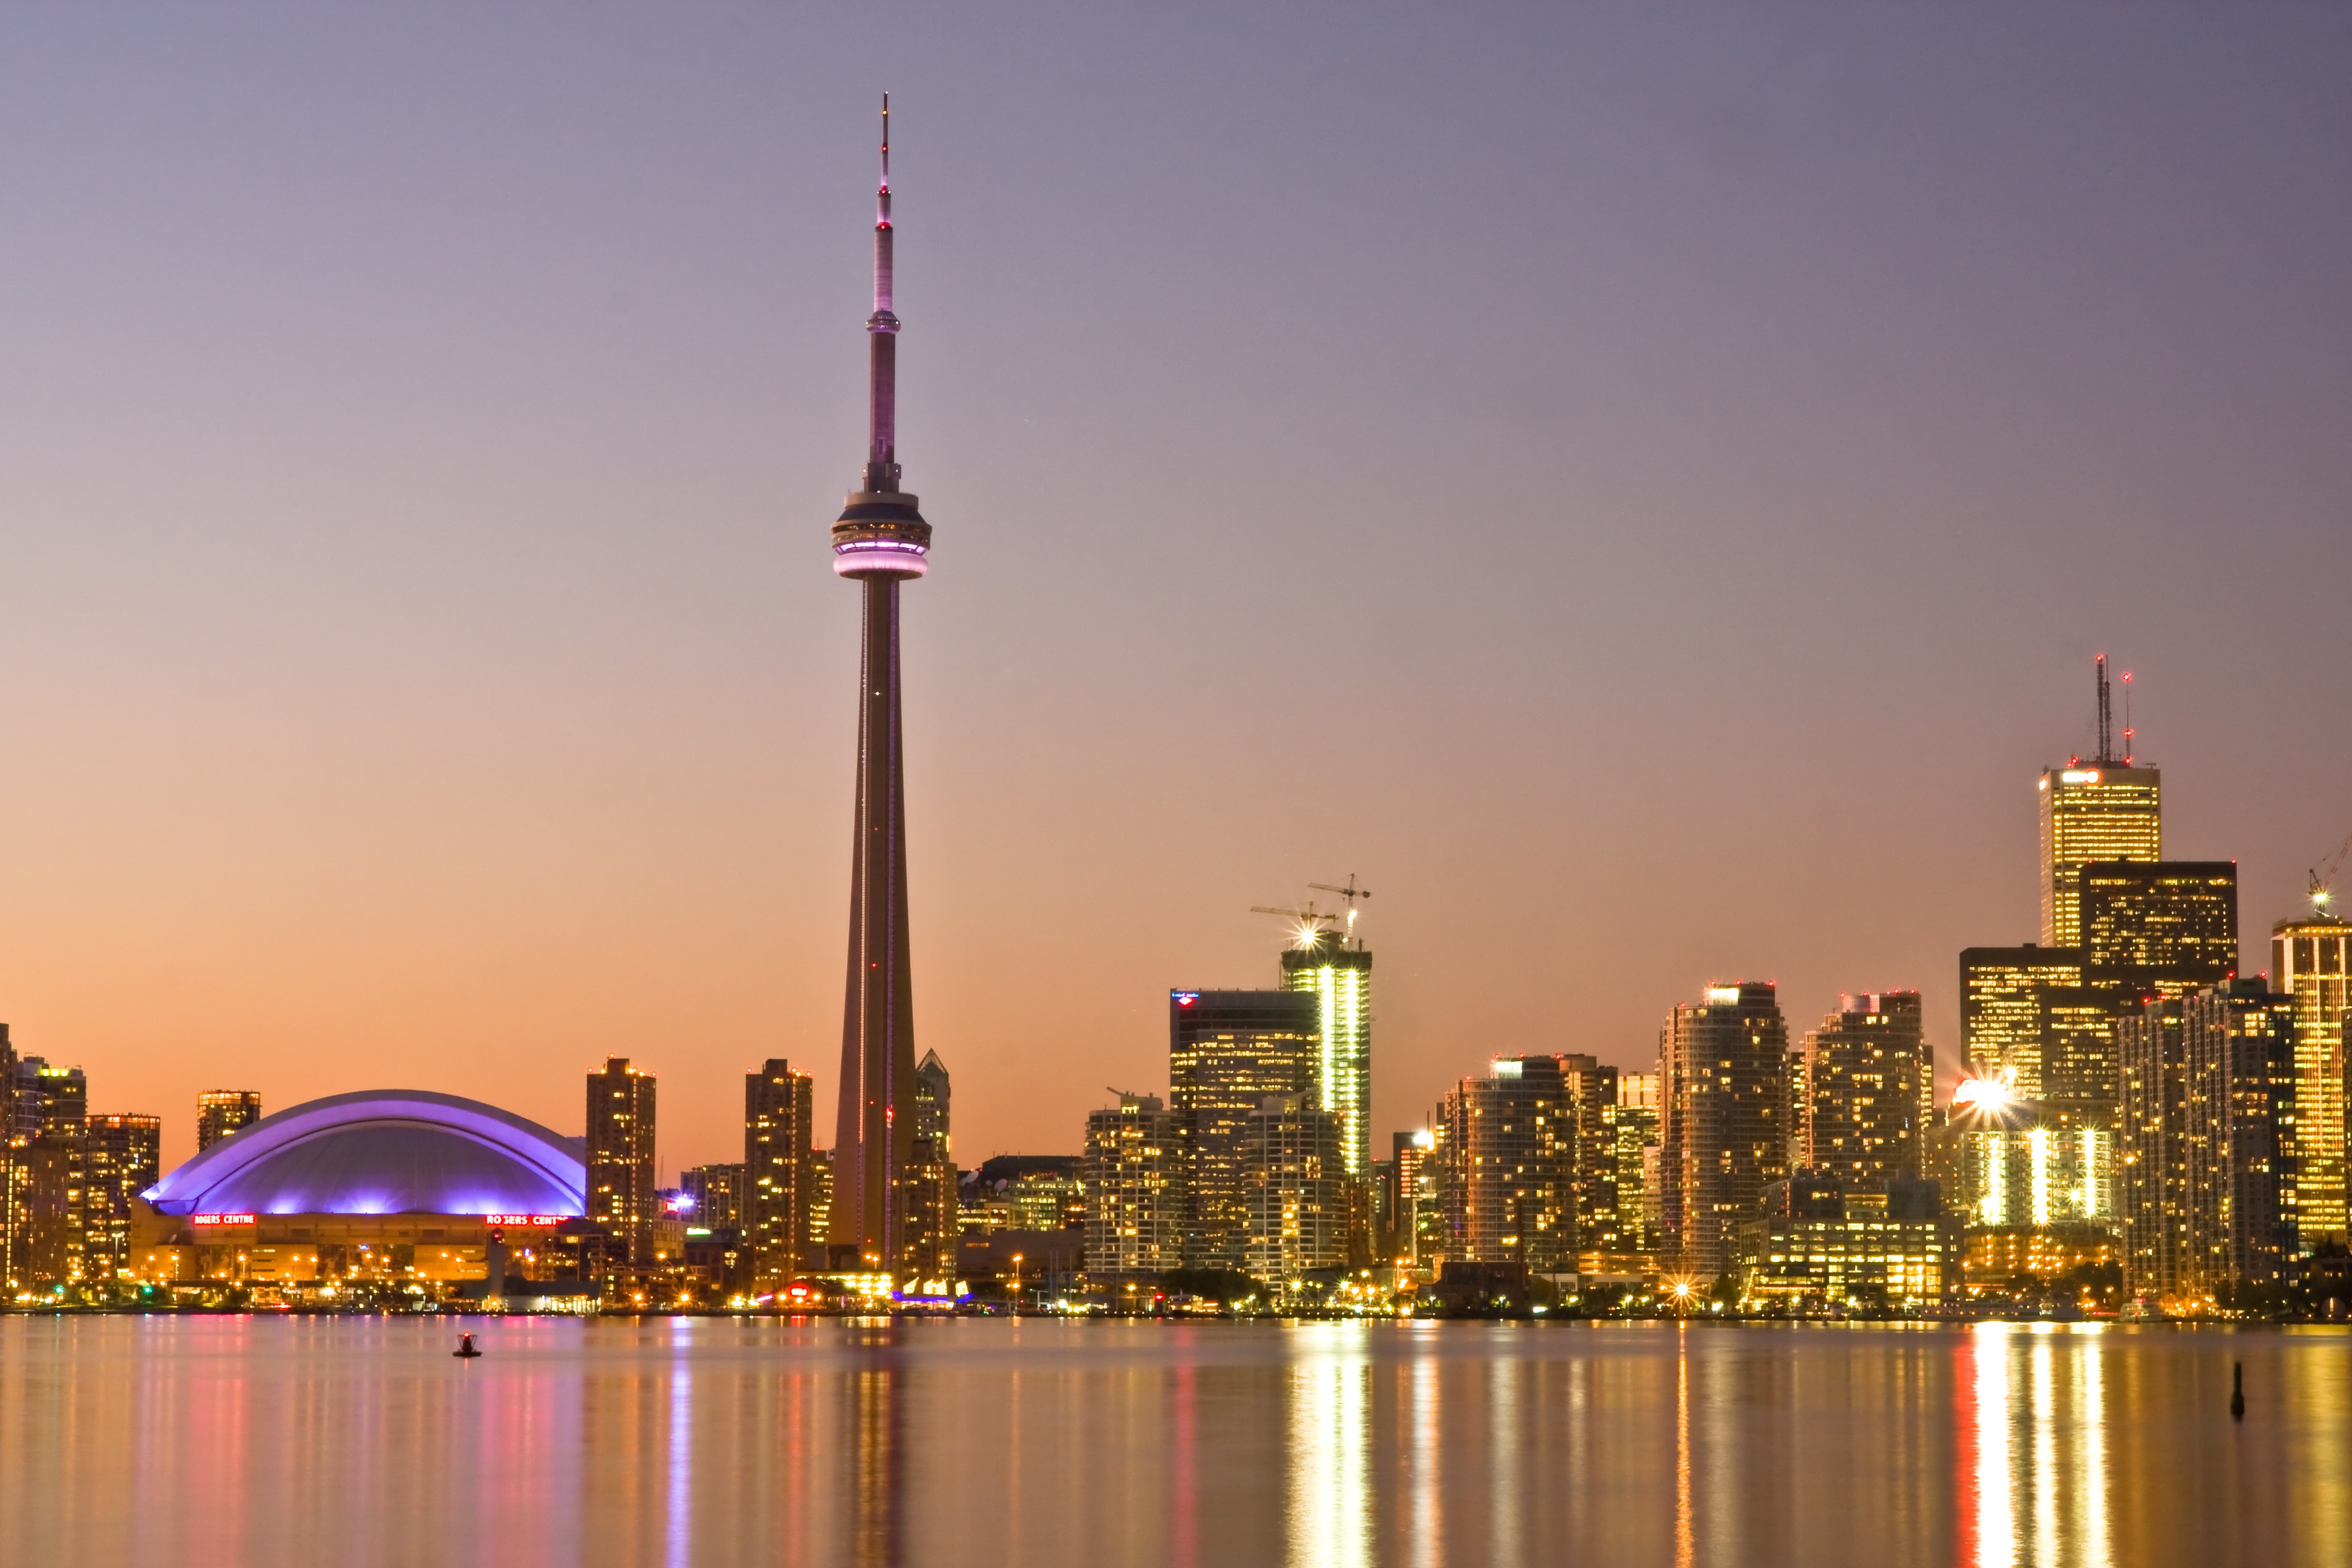 Toronto nổi tiếng với các cao ốc chọc trời, Đại học Toronto và ngọn tháp CN cao bậc nhất thế giới